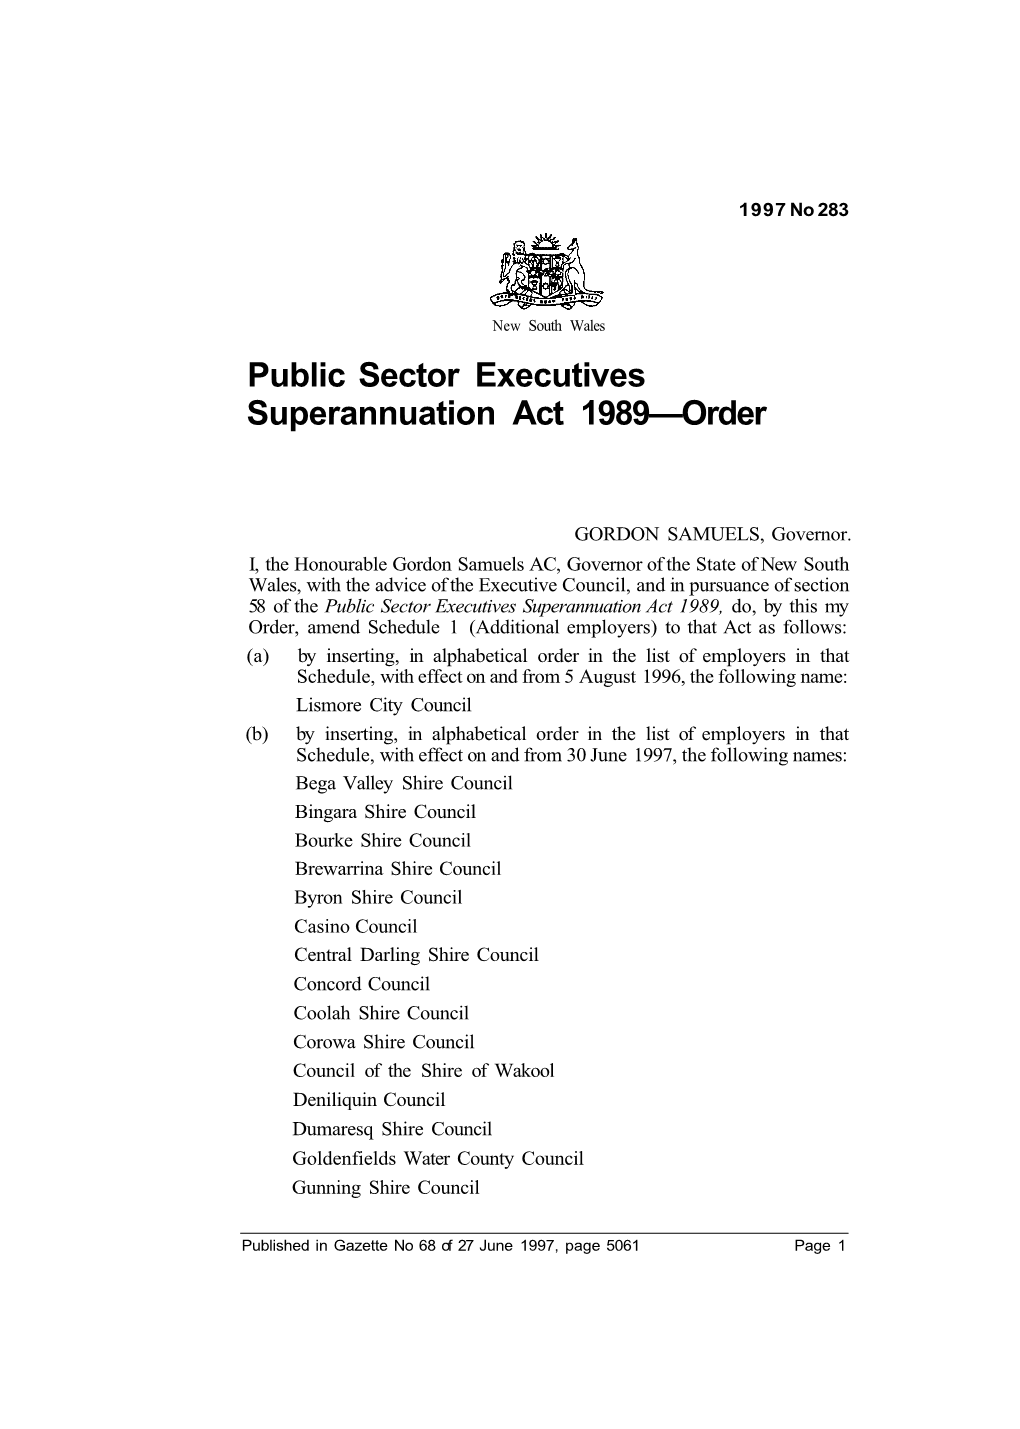 Public Sector Executives Superannuation Act 1989—Order